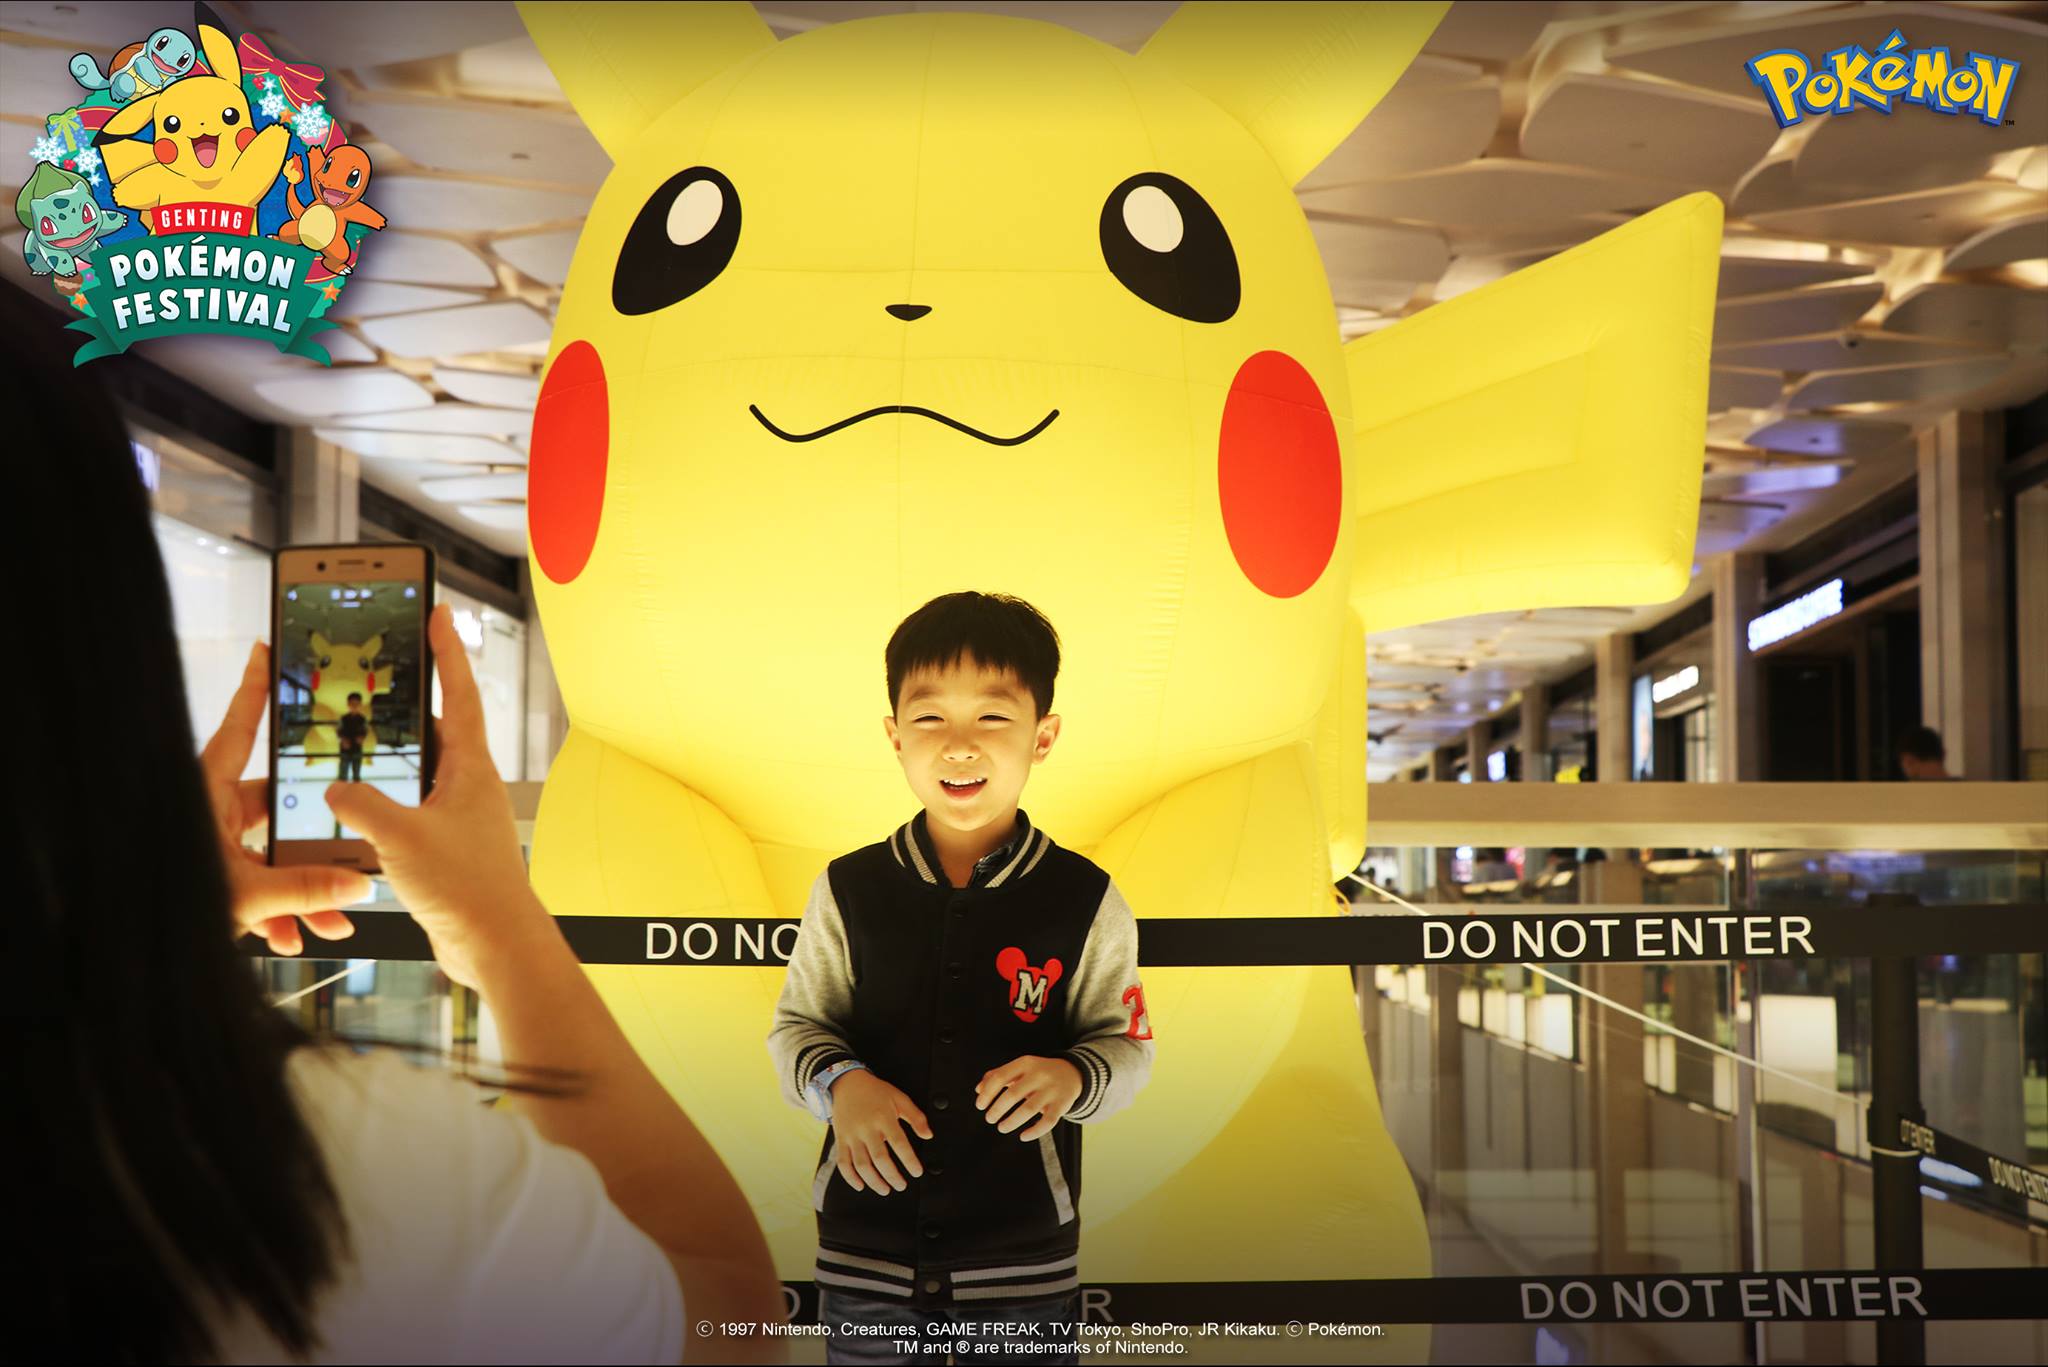 和皮卡丘雕塑合照。-摘自Pokémon Malaysia粉专-